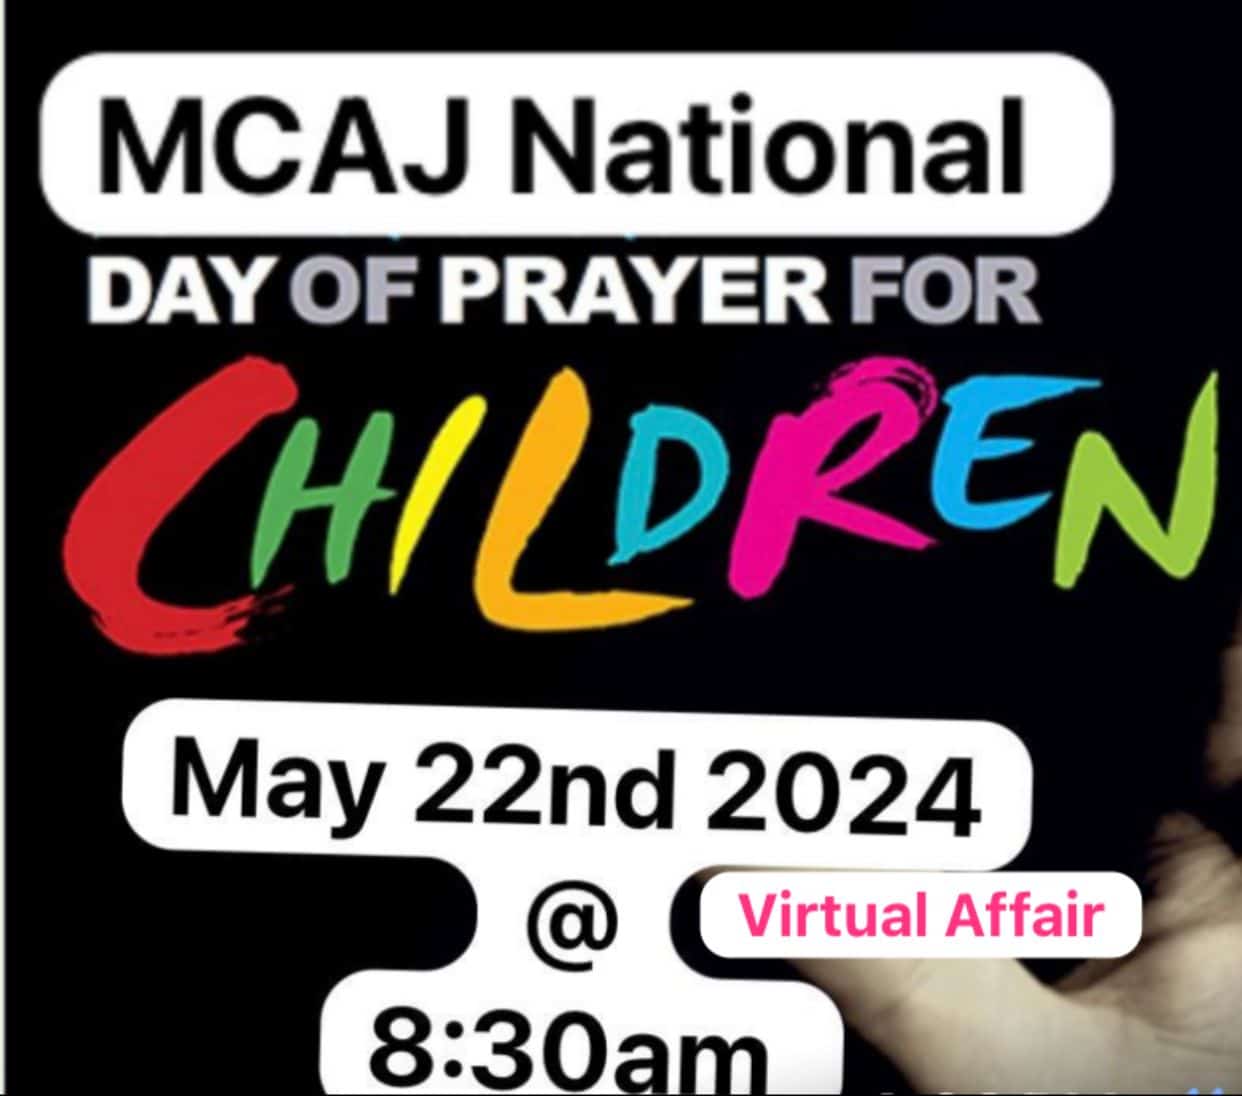 Day of Prayer for Children Poster